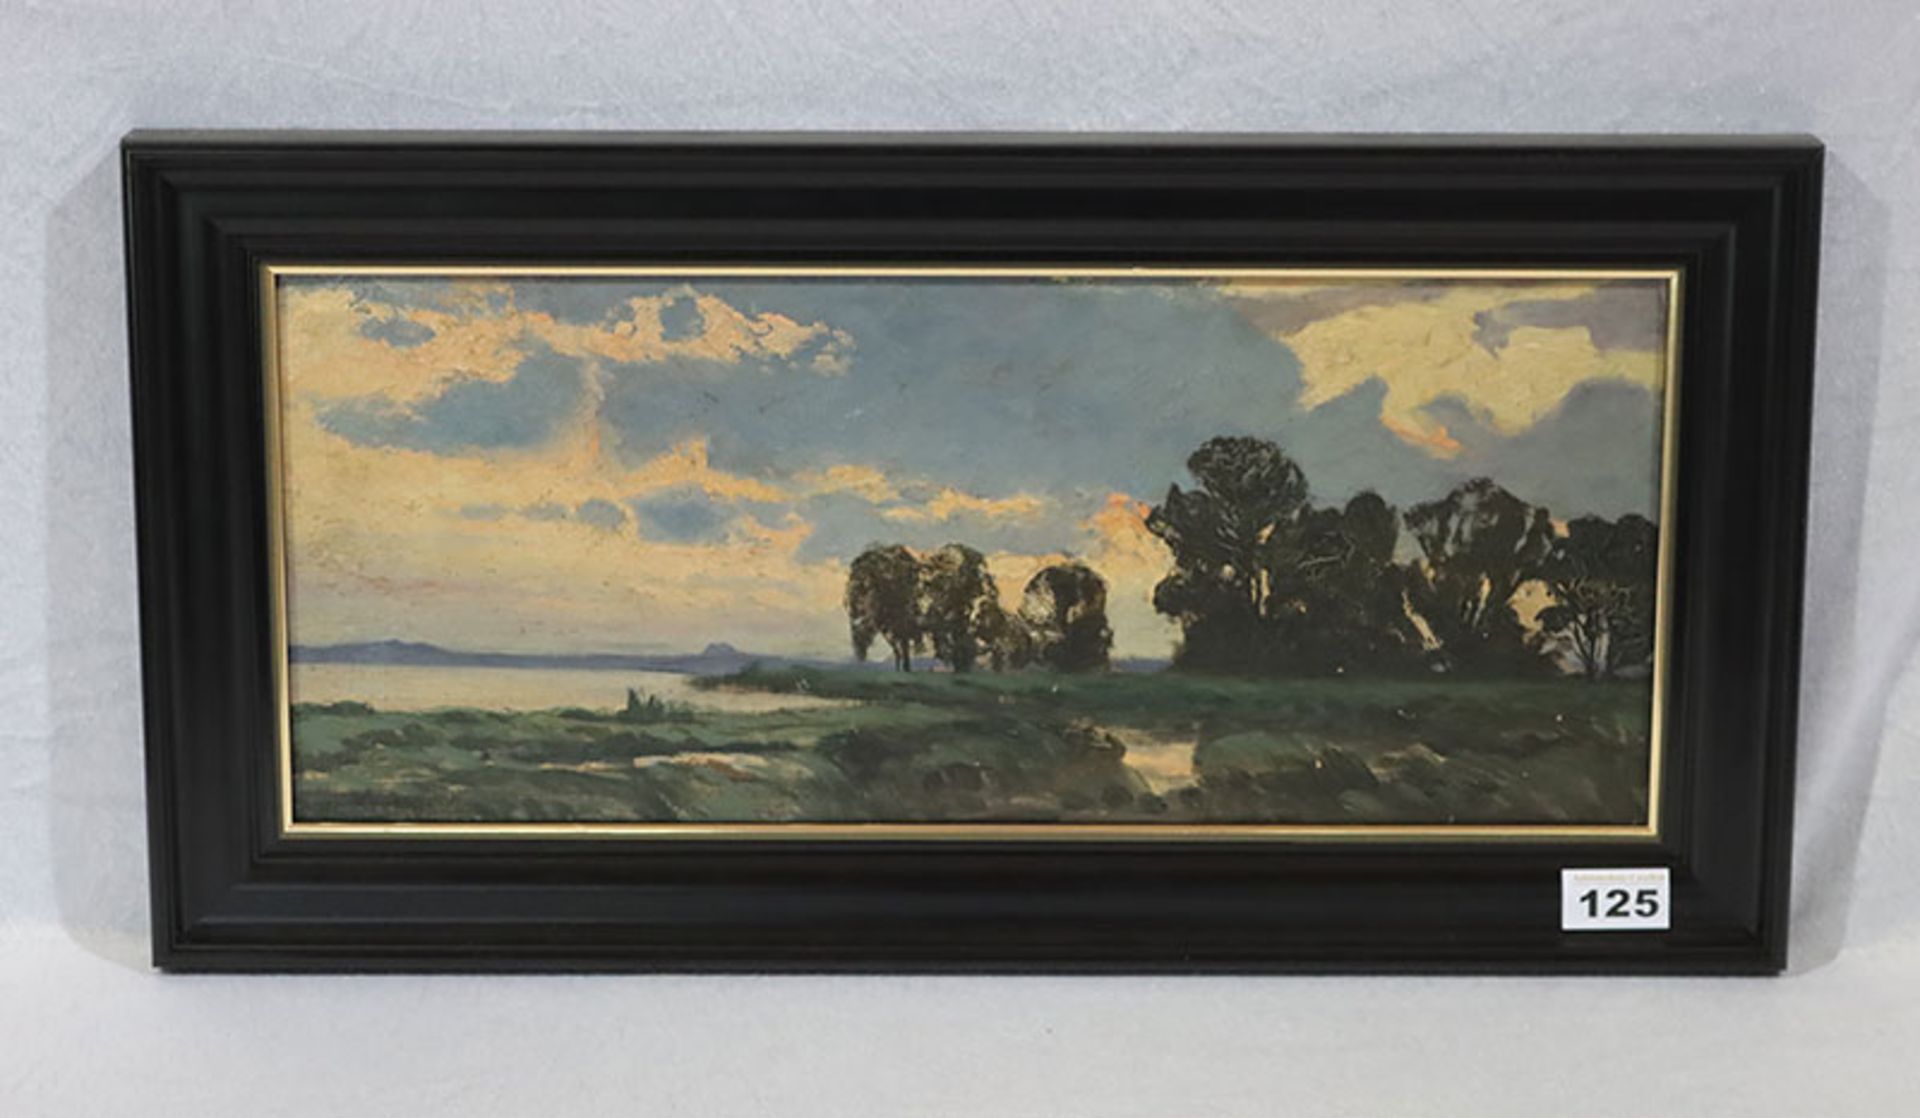 Gemälde ÖL/Malkarton 'Küsten-Szenerie', signiert G. von Hoven, Gottfried von Hoven, * 1868 Frankfurt